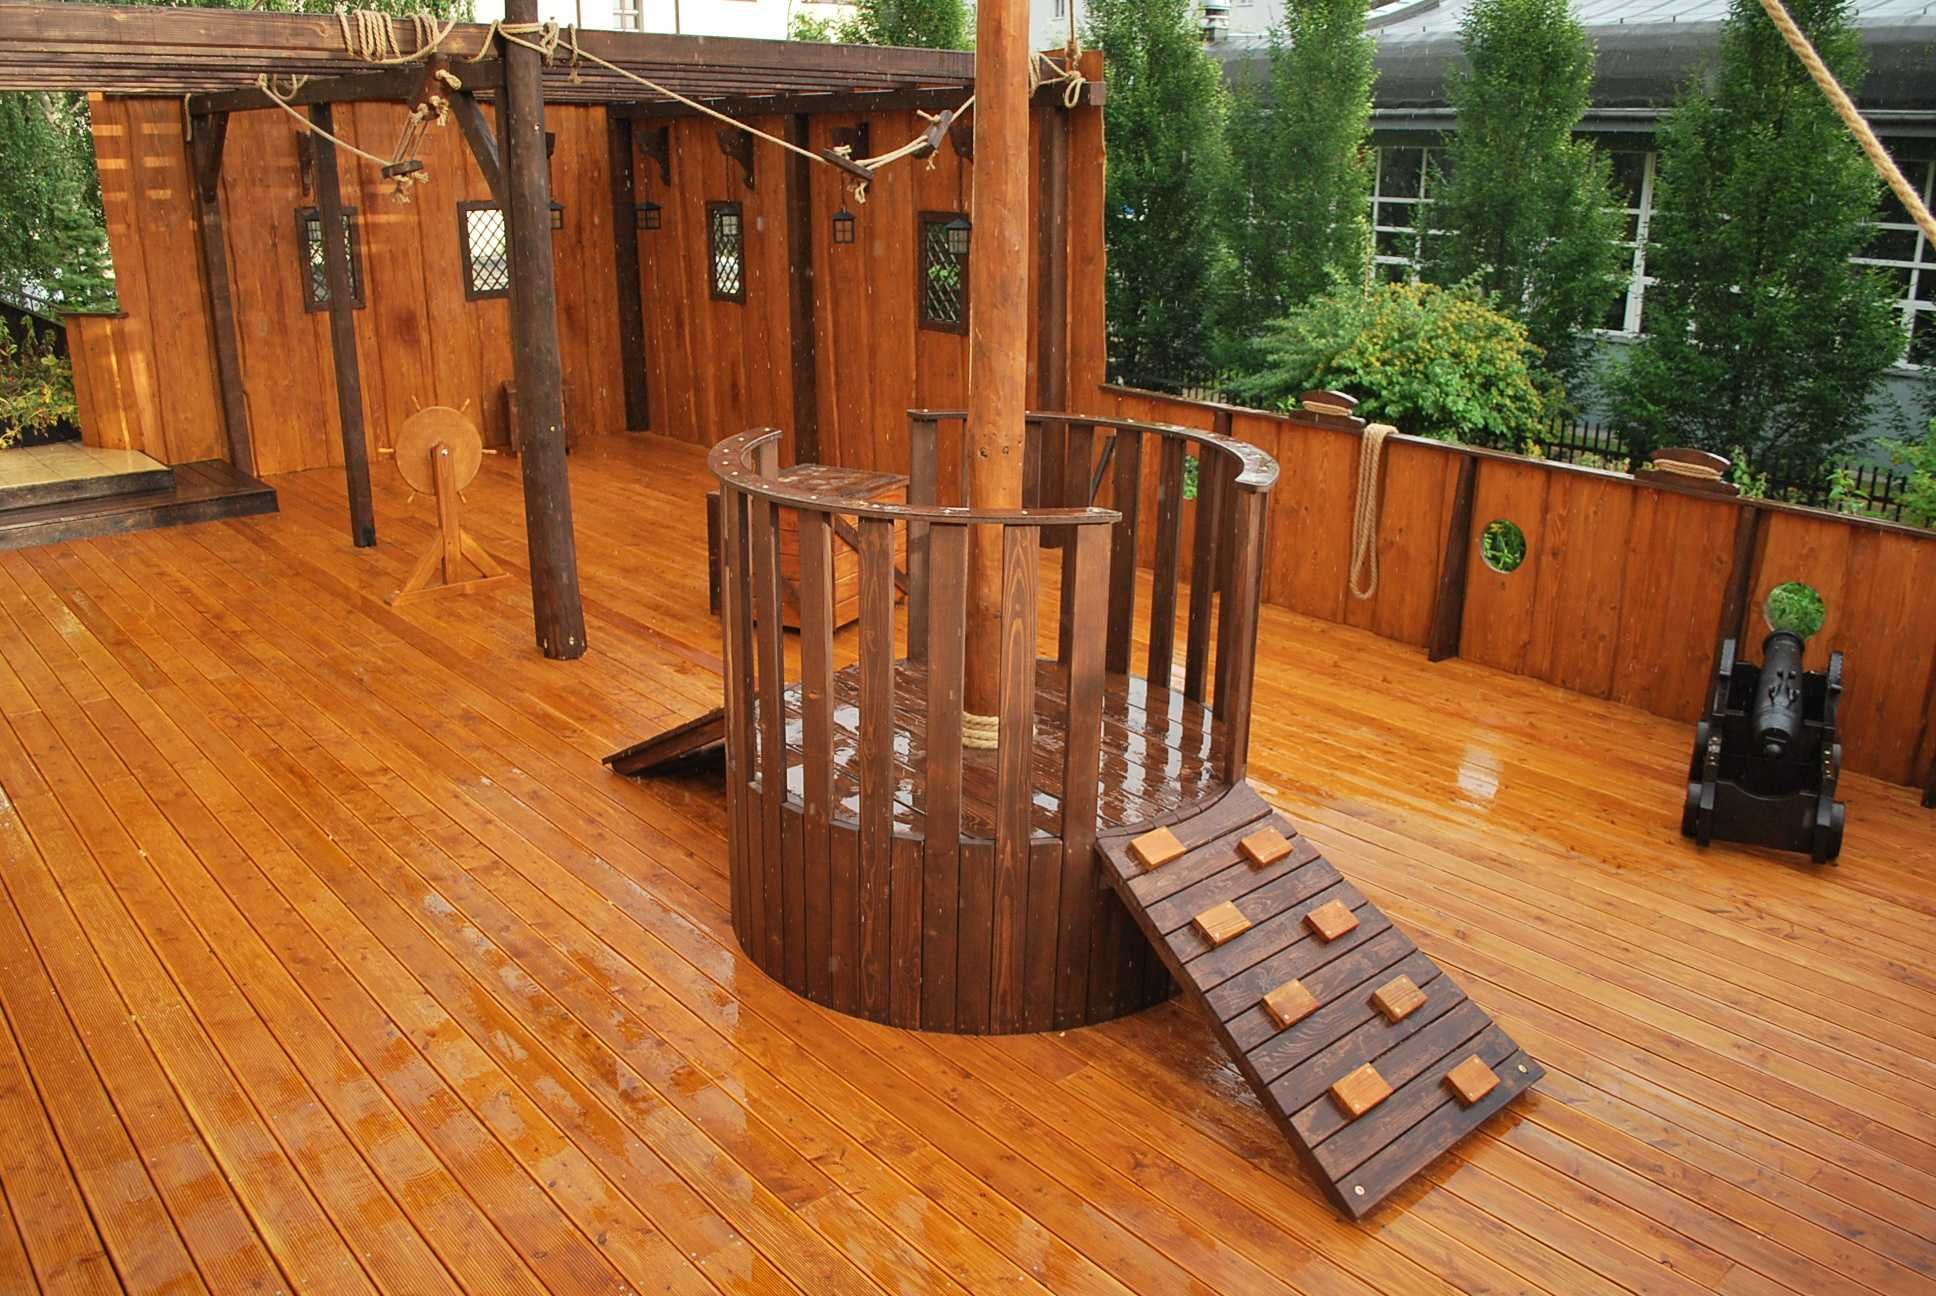 Drewniany plac zabaw PZ17 taras dla dzieci STATEK piracki